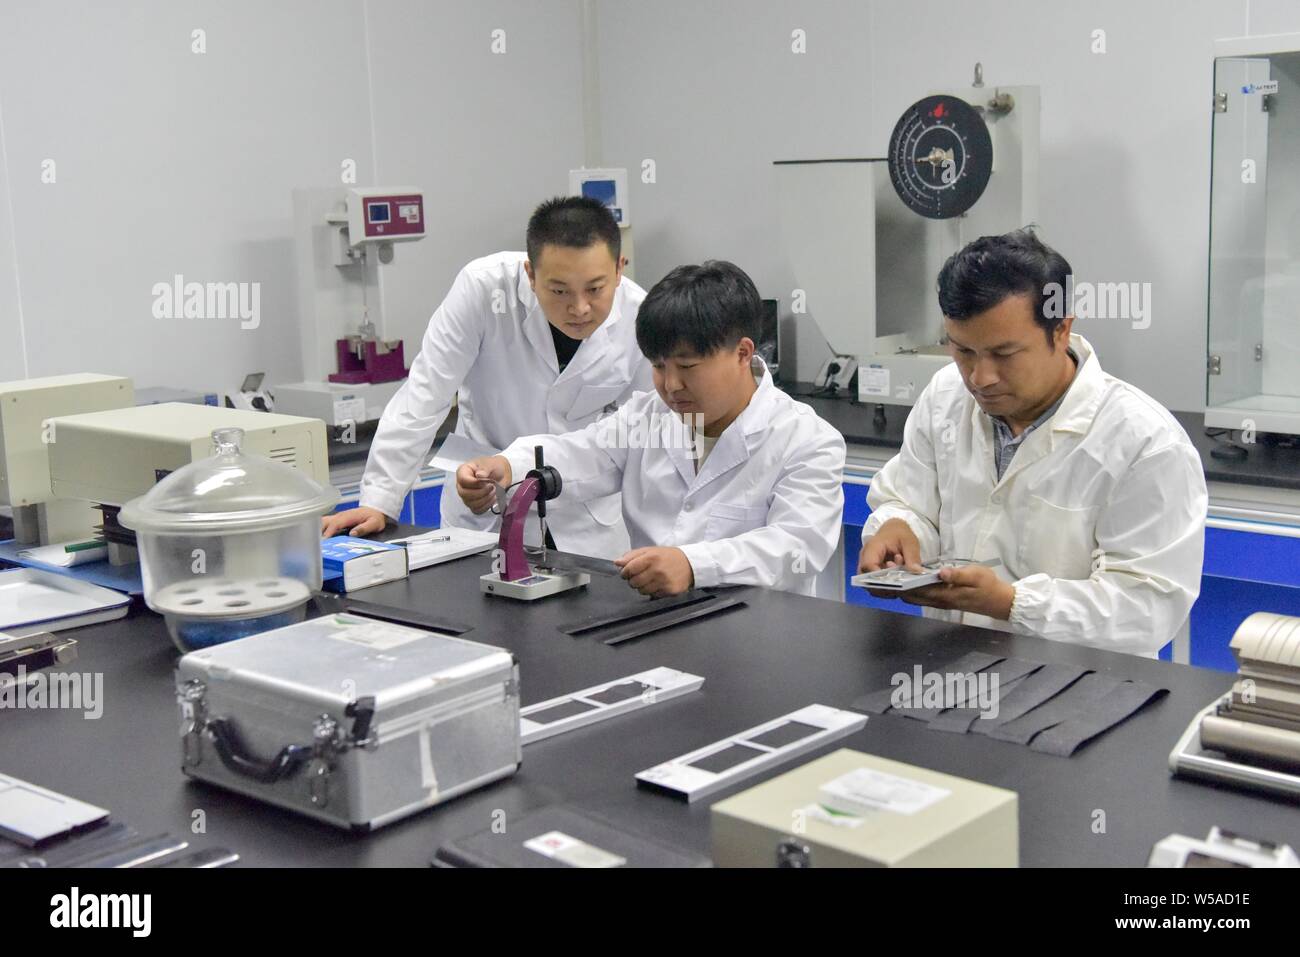 (190727) -- TURPAN, le 27 juillet 2019 (Xinhua) -- Les inspecteurs effectuent des spécifications de l'échantillon et la dimension d'essais sur le Xinjiang Turpan Environnement naturel Centre de recherches expérimentales en Turpan, nord-ouest de la Chine, la Région autonome du Xinjiang Uygur, 17 juillet 2019. Vous Liwu, 26, a été un test d'exposition à l'extérieur de l'inspecteur Xinjiang Turpan Environnement naturel Centre de recherches expérimentales depuis l'obtention du diplôme il y a deux ans. Son travail est d'inspecter les éléments d'essai et de surveillance et collecte des données, qui serait exposé à la terre d'essai torride pour jusqu'à cinq heures par jour. En Turpan, la température de surface des terres Banque D'Images